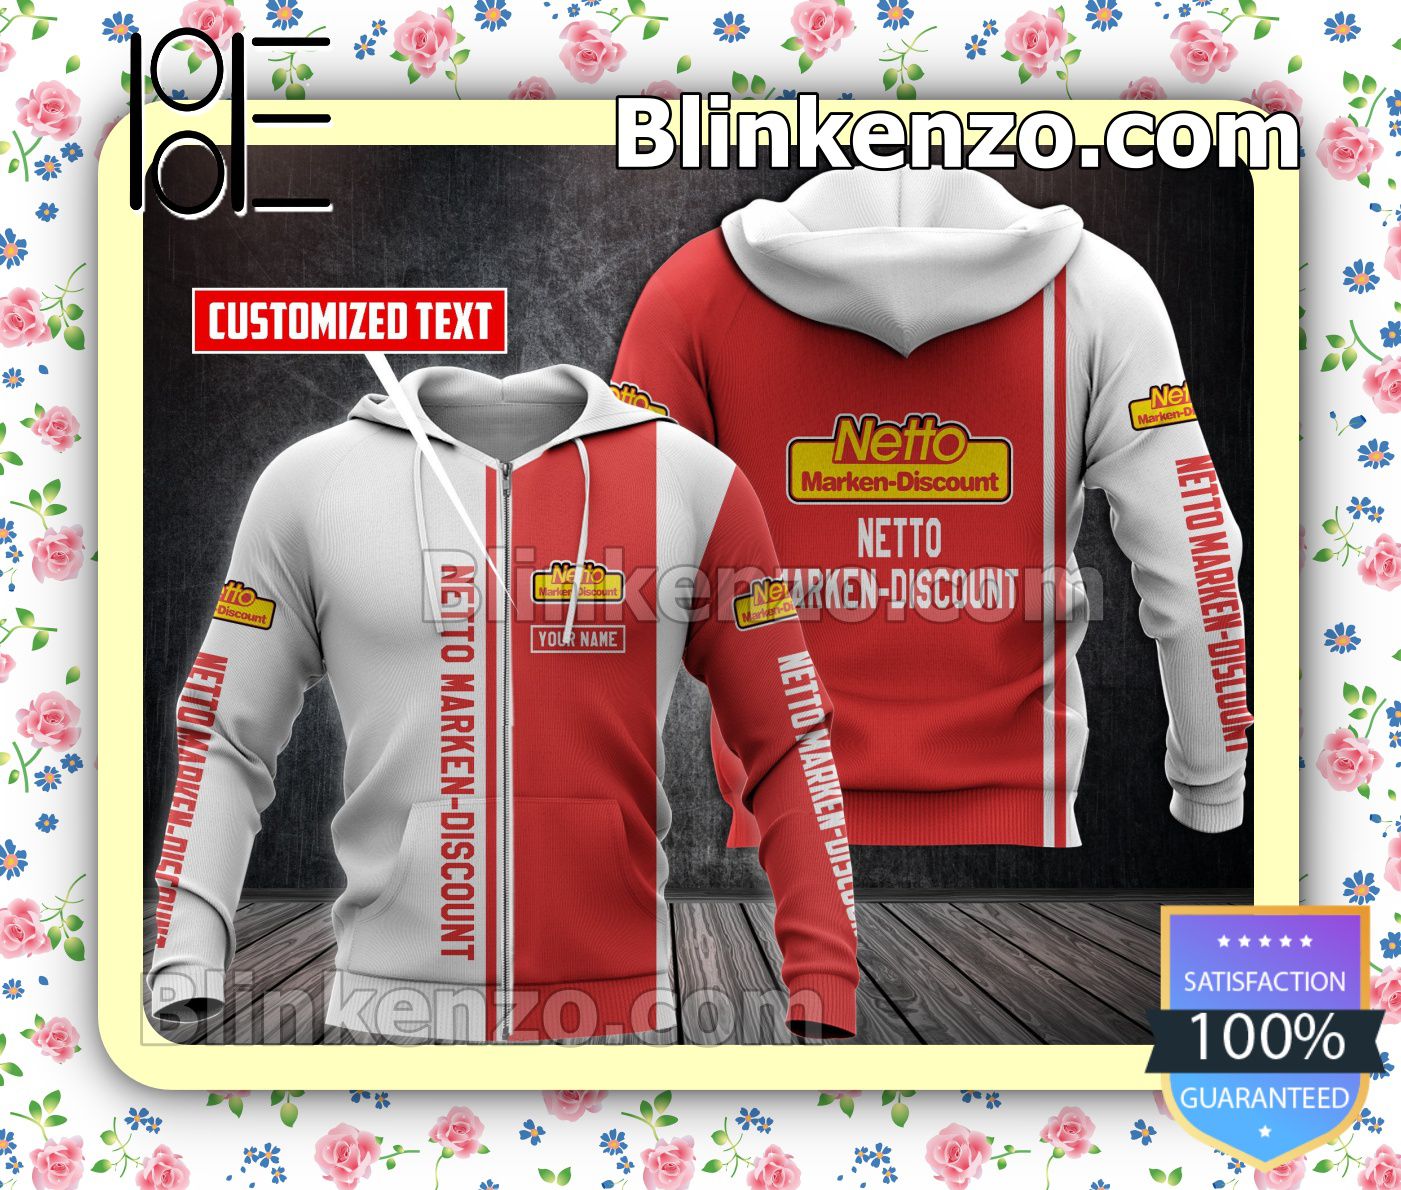 Netto Marken-discount Pullover Sweatshirt - Blinkenzo